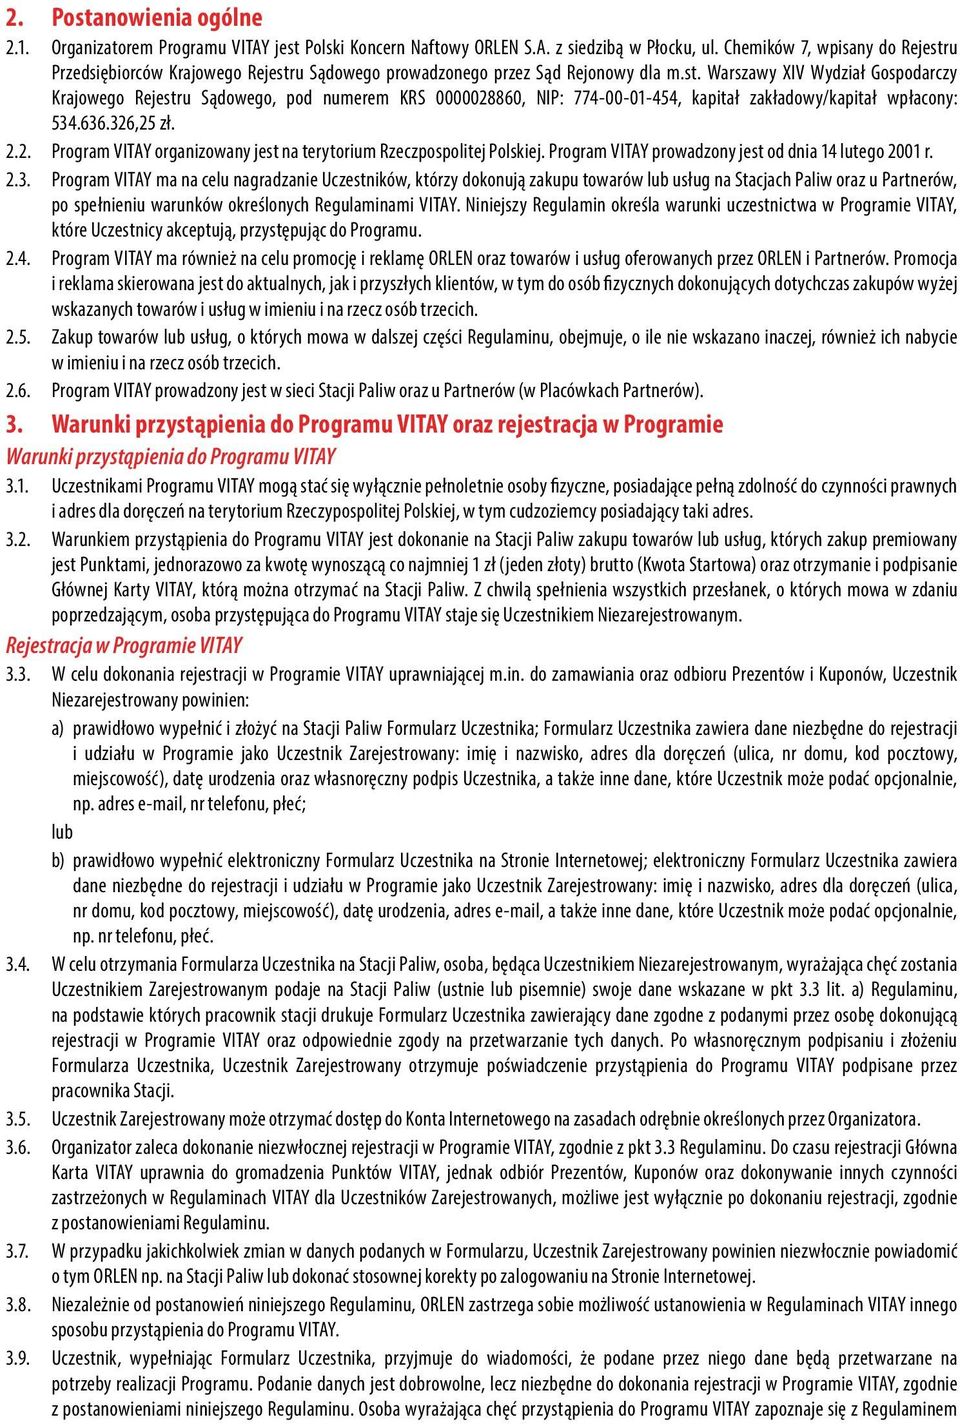 636.326,25 zł. 2.2. Program VITAY organizowany jest na terytorium Rzeczpospolitej Polskiej. Program VITAY prowadzony jest od dnia 14 lutego 2001 r. 2.3. Program VITAY ma na celu nagradzanie Uczestników, którzy dokonują zakupu towarów lub usług na Stacjach Paliw oraz u Partnerów, po spełnieniu warunków określonych Regulaminami VITAY.